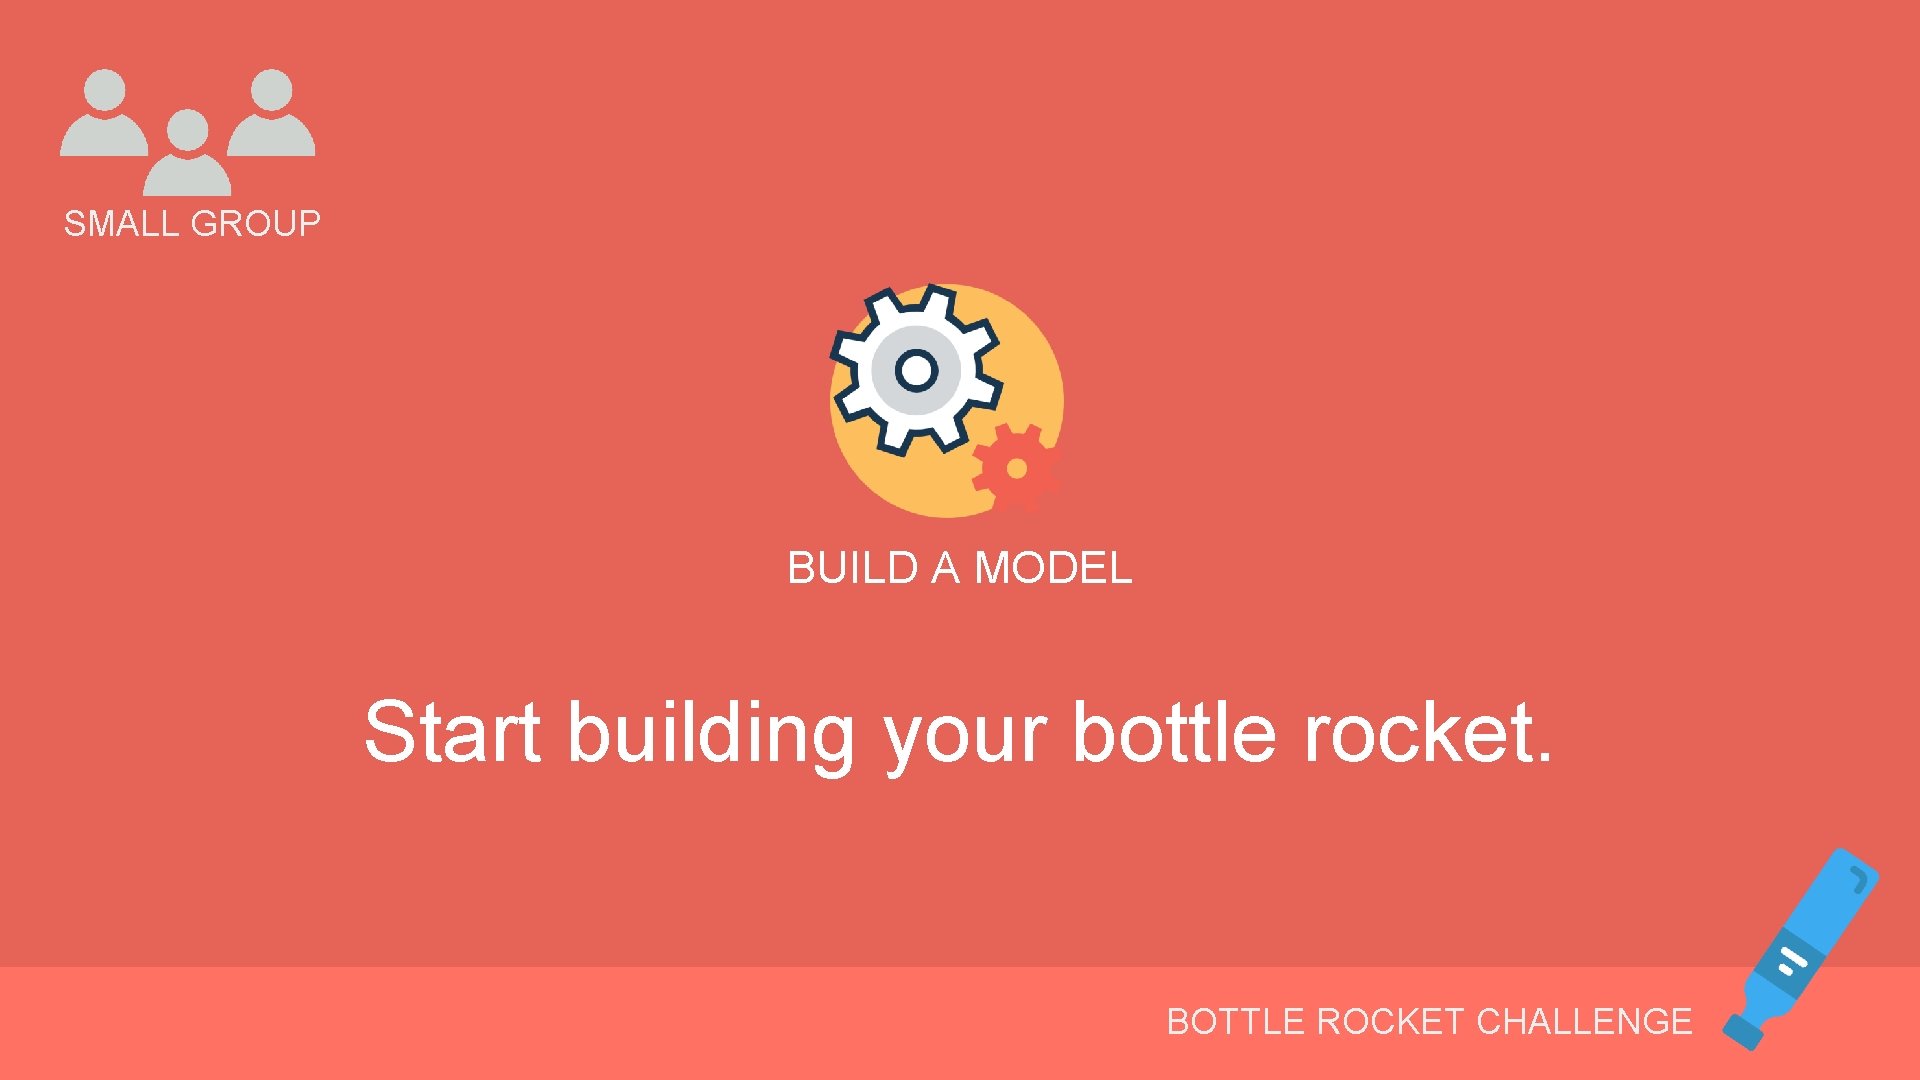 SMALL GROUP BUILD A MODEL Start building your bottle rocket. BOTTLE ROCKET CHALLENGE 